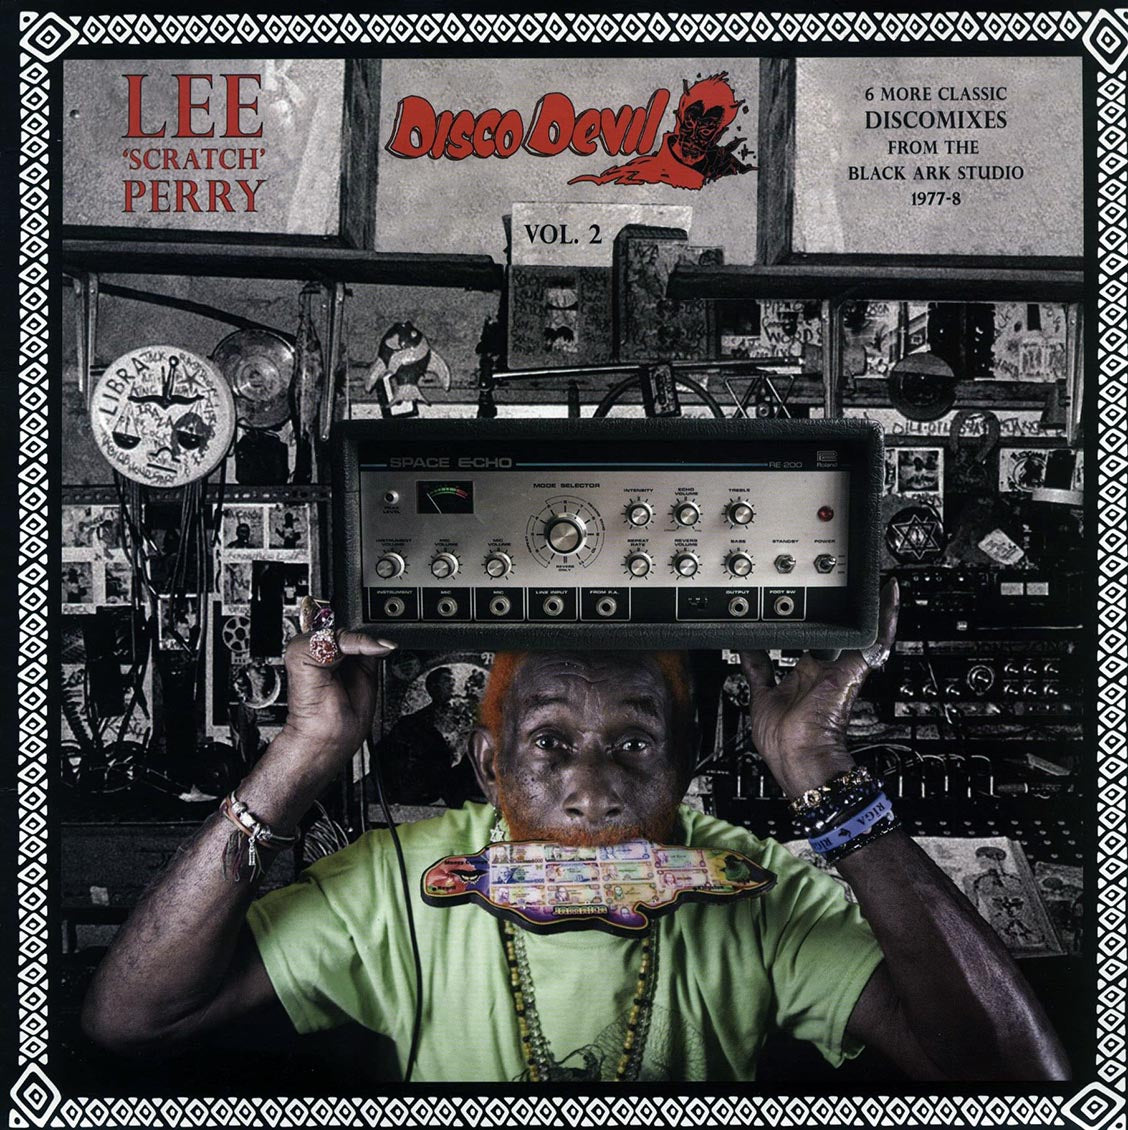 Lee 'Scratch' Perry - Disco Devil Vol. 2 [2019 New Vinyl Record LP]